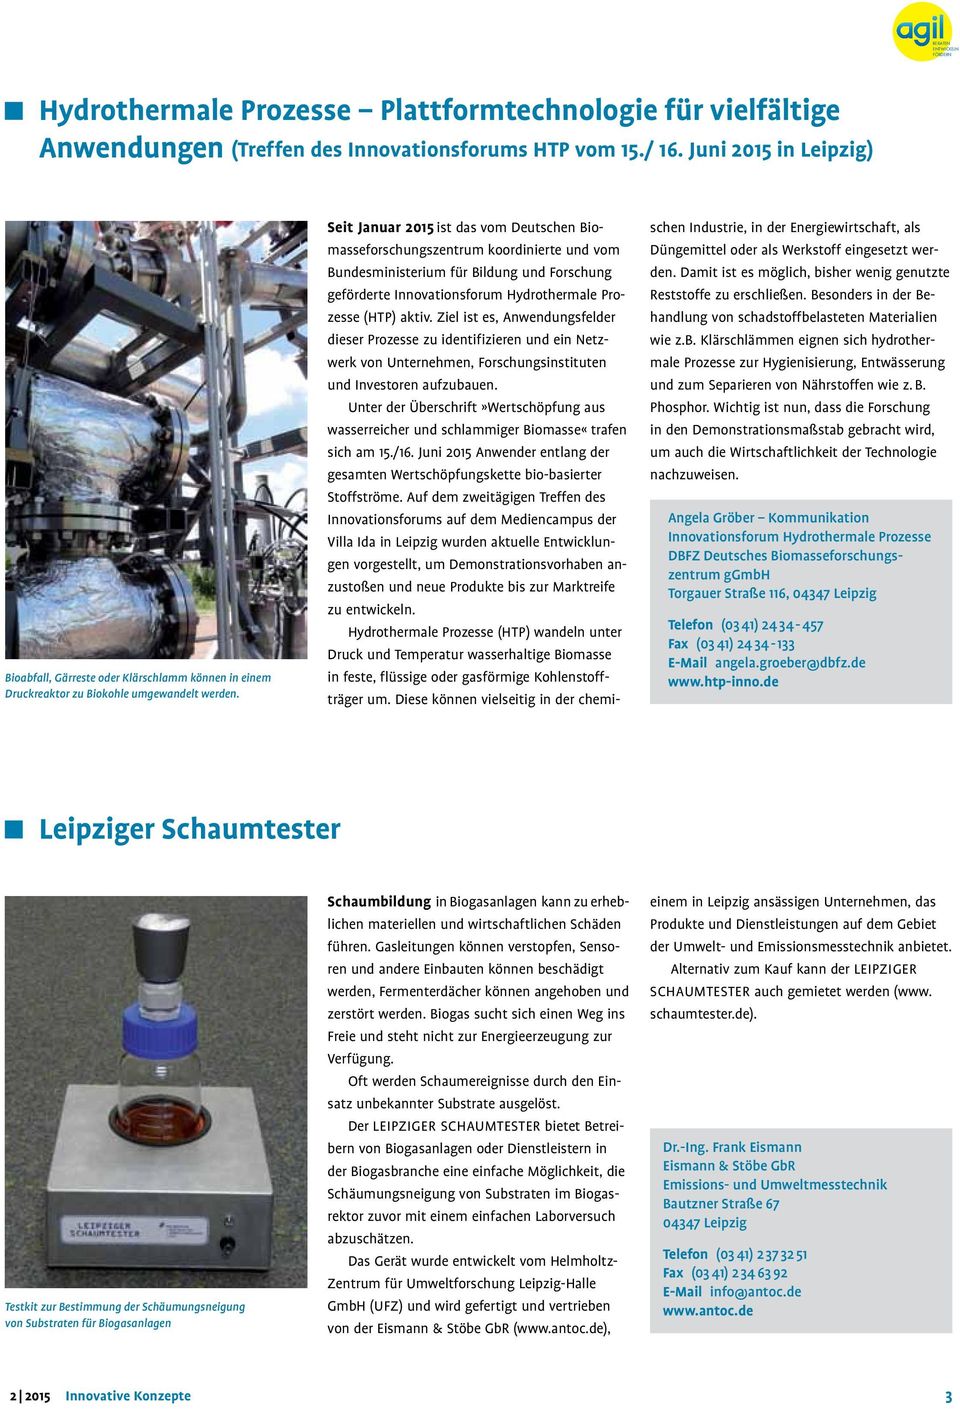 Seit Januar 2015 ist das vom Deutschen Biomasseforschungszentrum koordinierte und vom Bundesministerium für Bildung und Forschung geförderte Innovationsforum Hydrothermale Prozesse (HTP) aktiv.